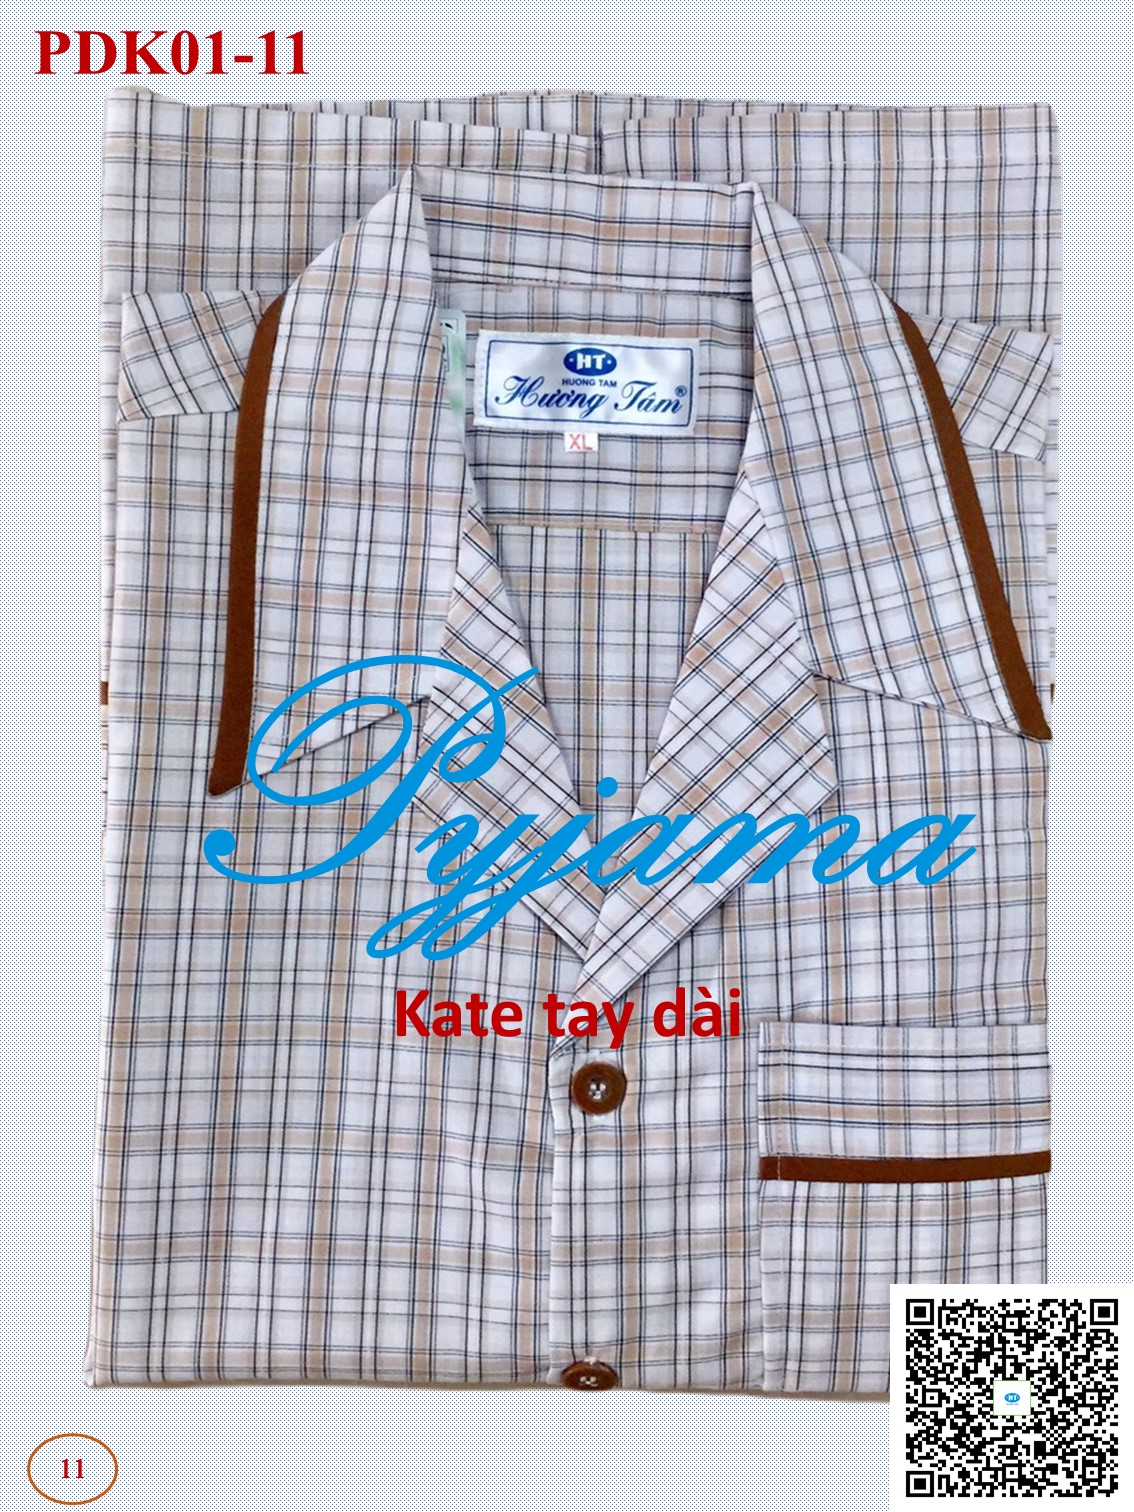 Bộ Pyjama HUONGTAM Kate tay dài nam cao cấp(PDK01). Chất liệu Kate loại tốt: mềm mại, thoáng mát, không phai màu